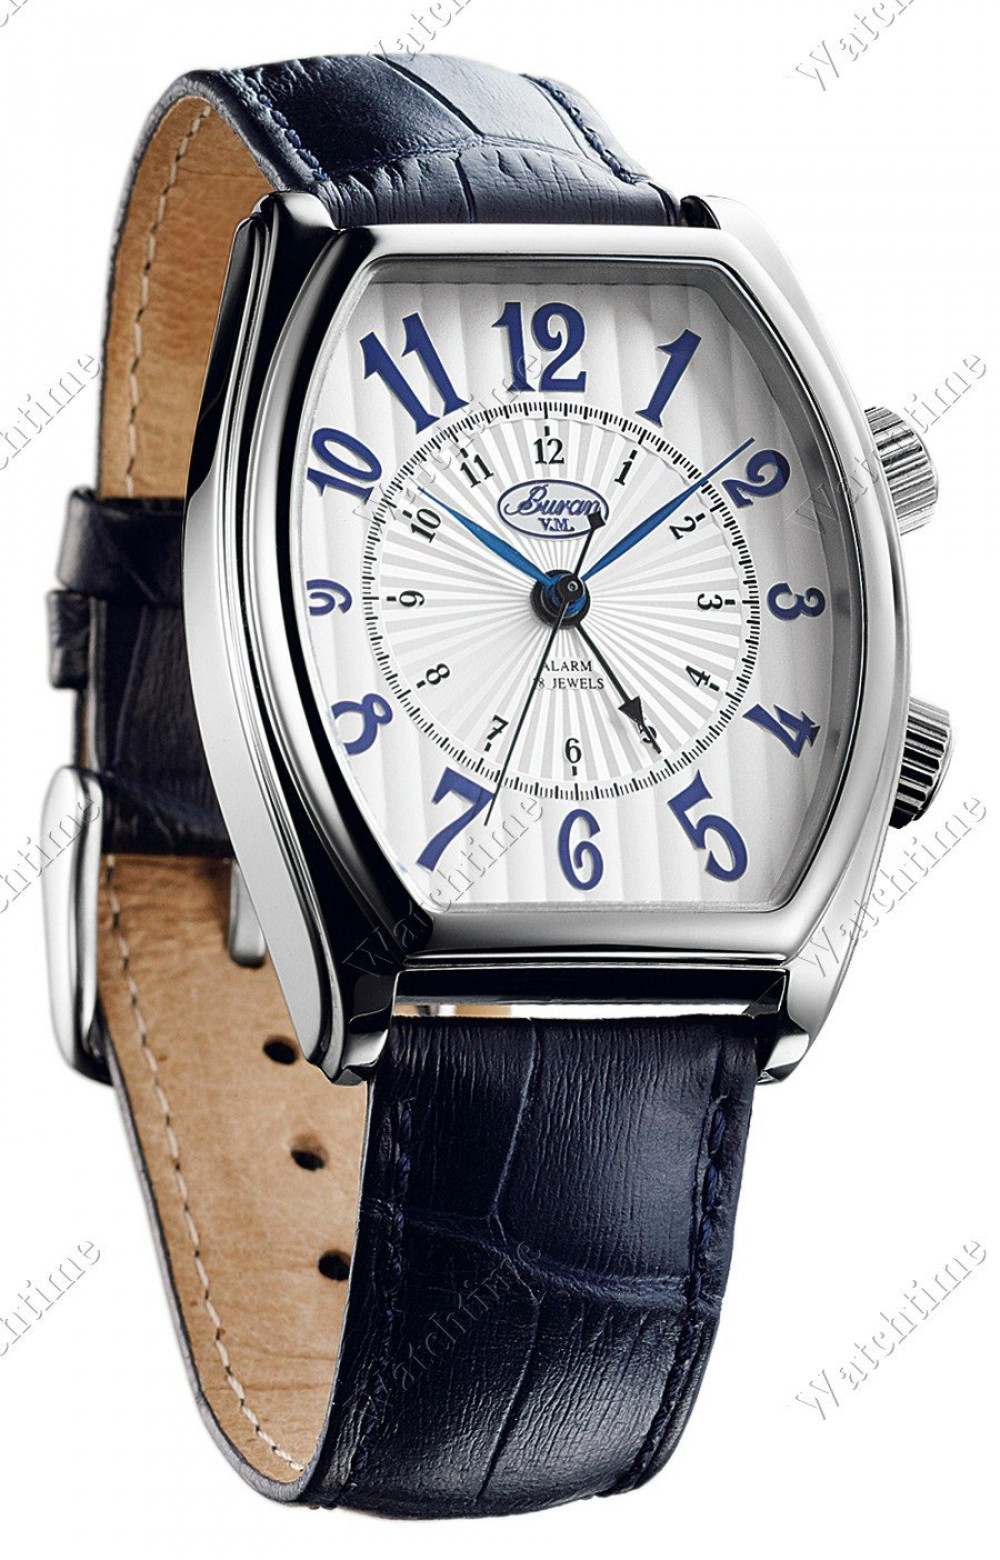 Zegarek firmy Buran (Russia), model Mechanisch Alarm